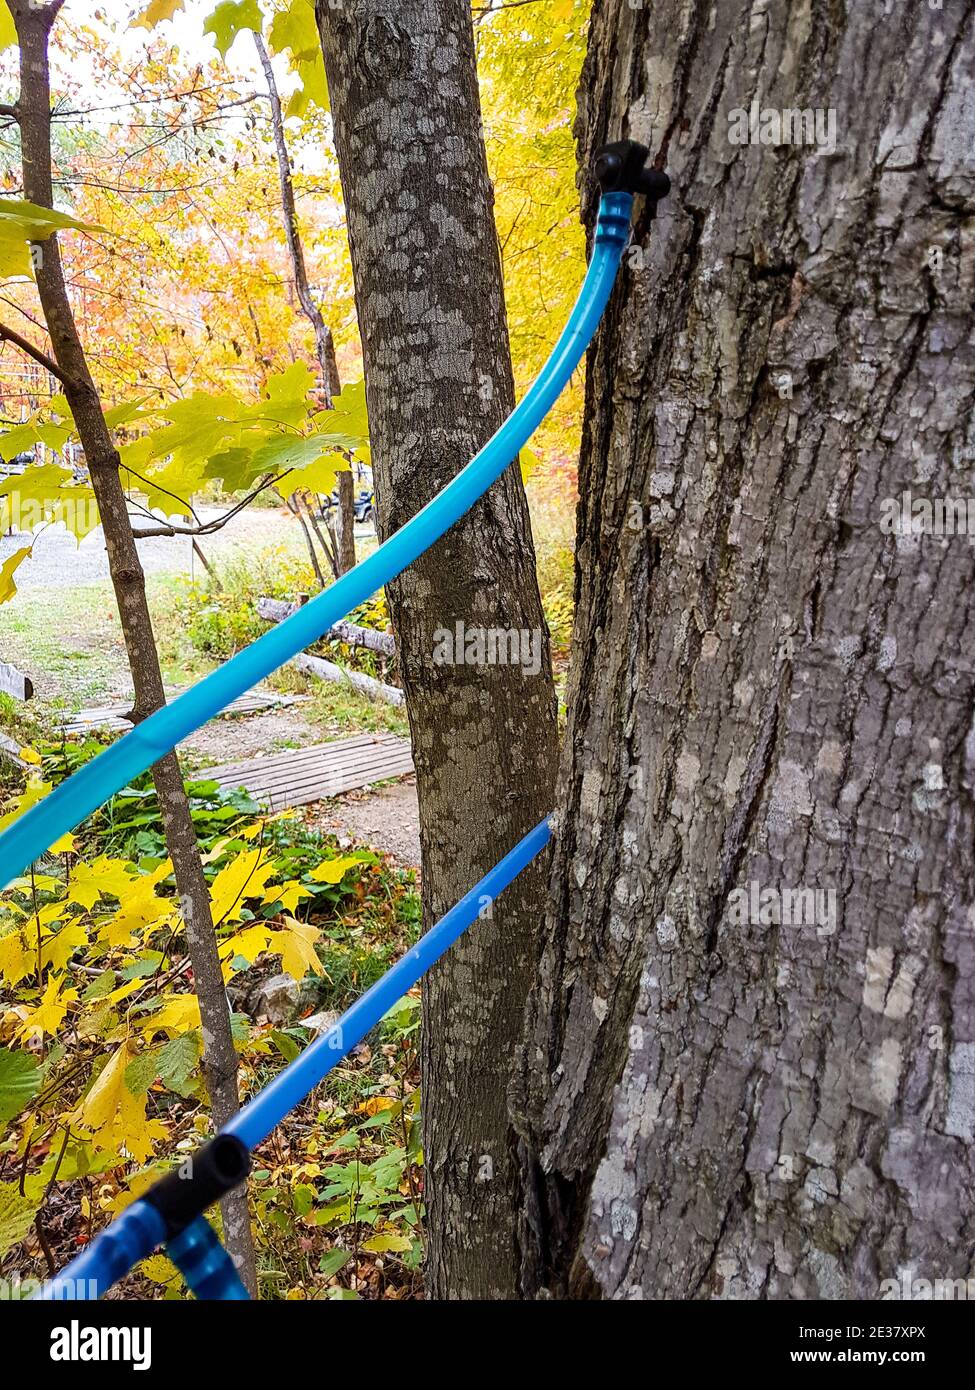 Le sirop d'érable se recueille dans la forêt au Québec Banque D'Images